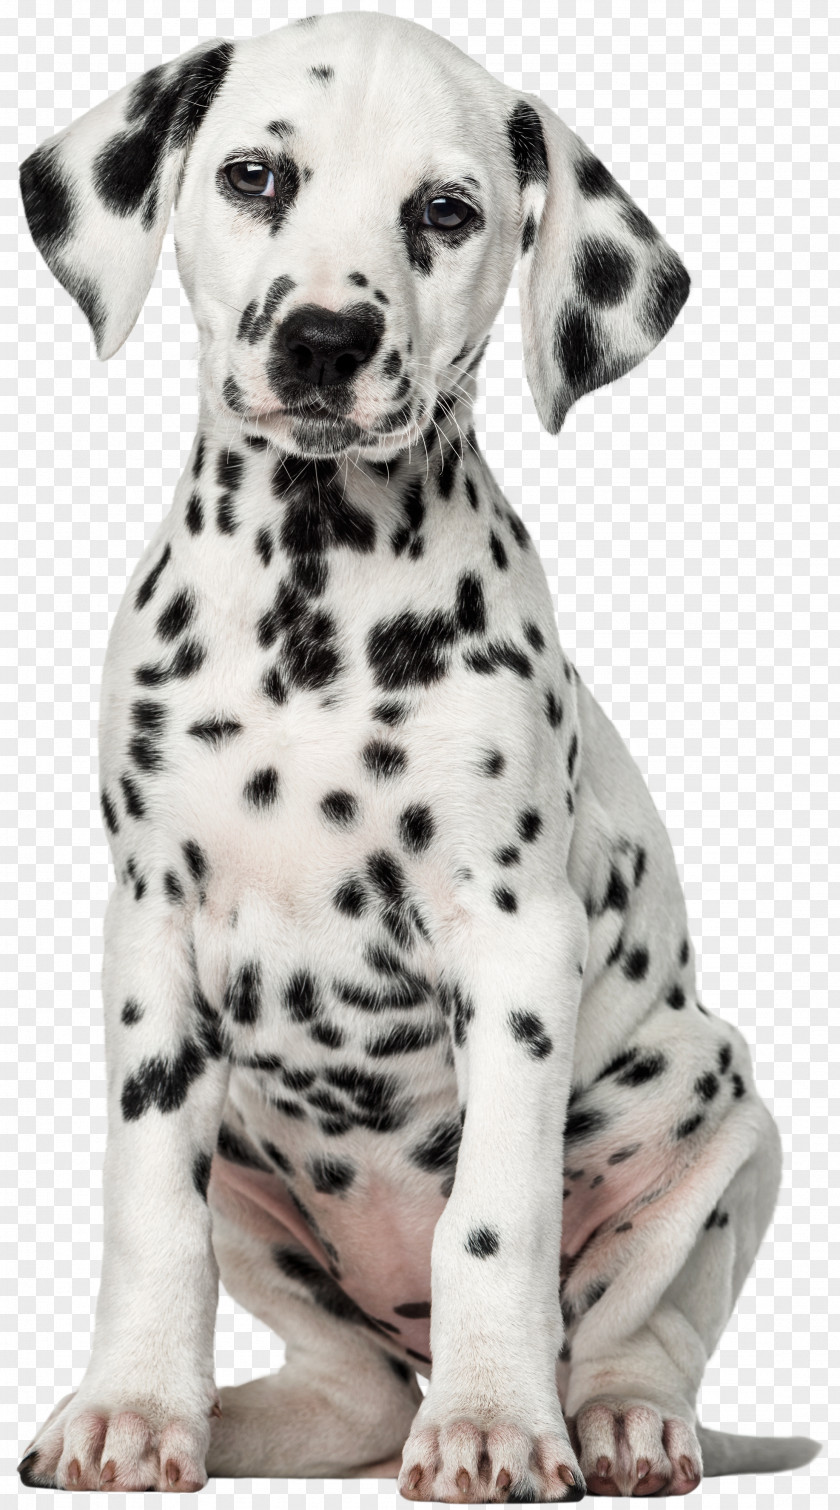 White Dog Dalmatian Puppy Pet Labrador Retriever Clip Art PNG